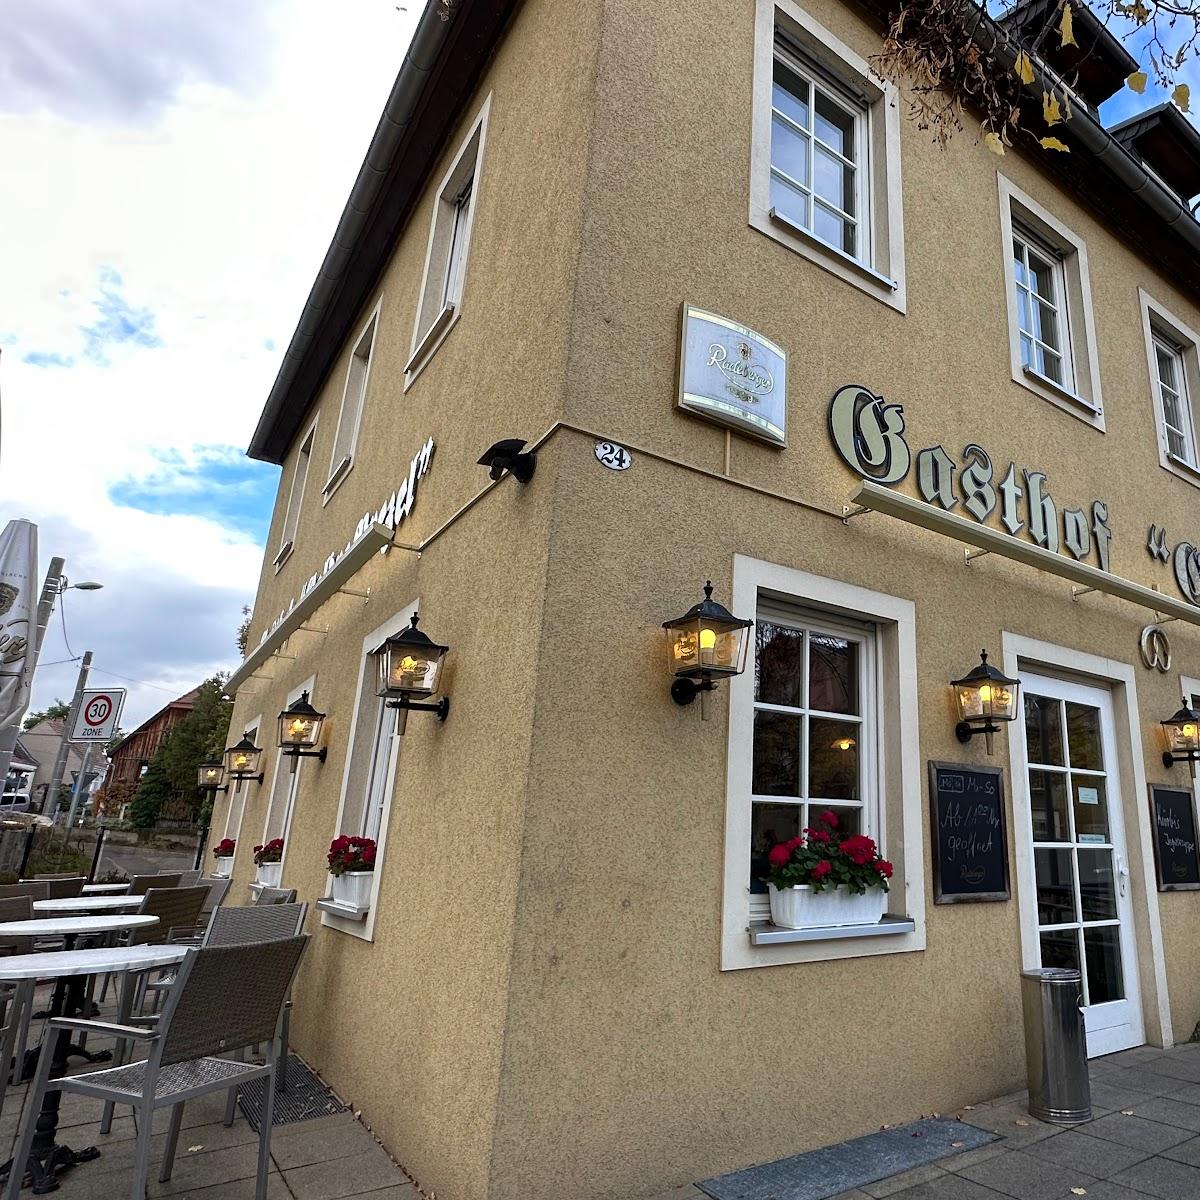 Restaurant "Goldne Brezel" in Moritzburg